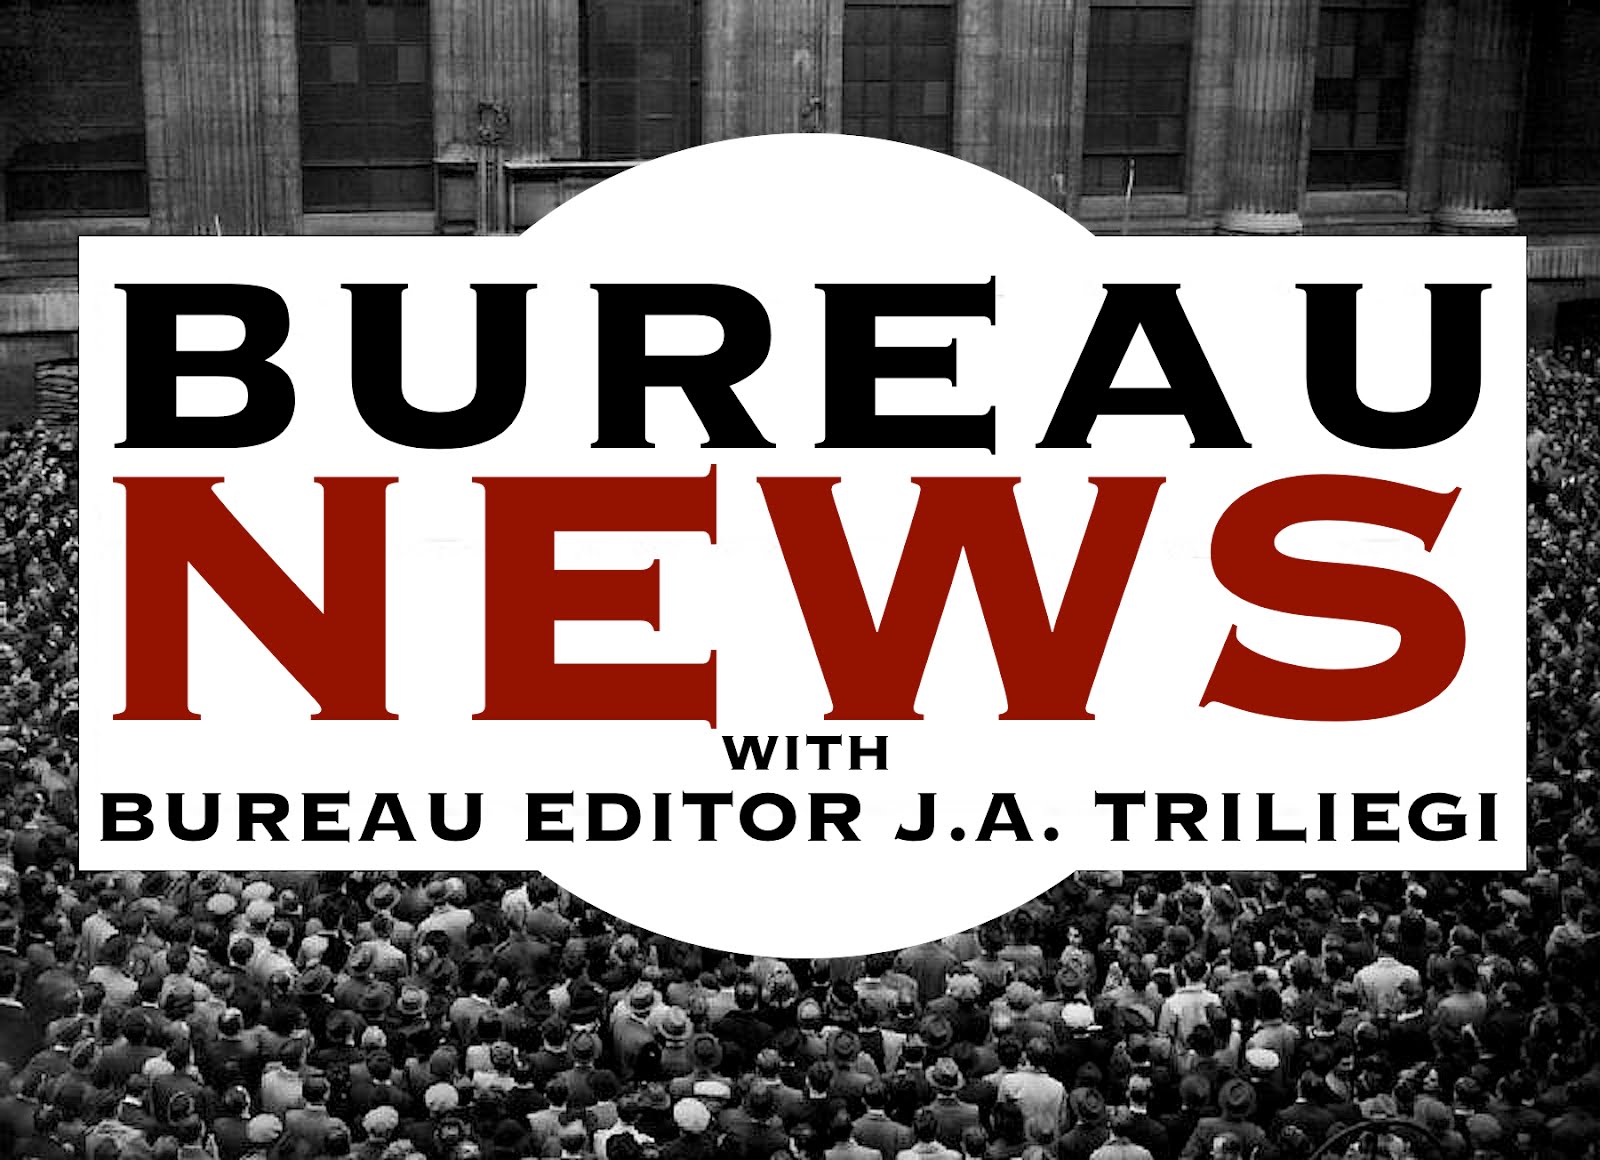 VISIT THE BUREAU NEWS SITE